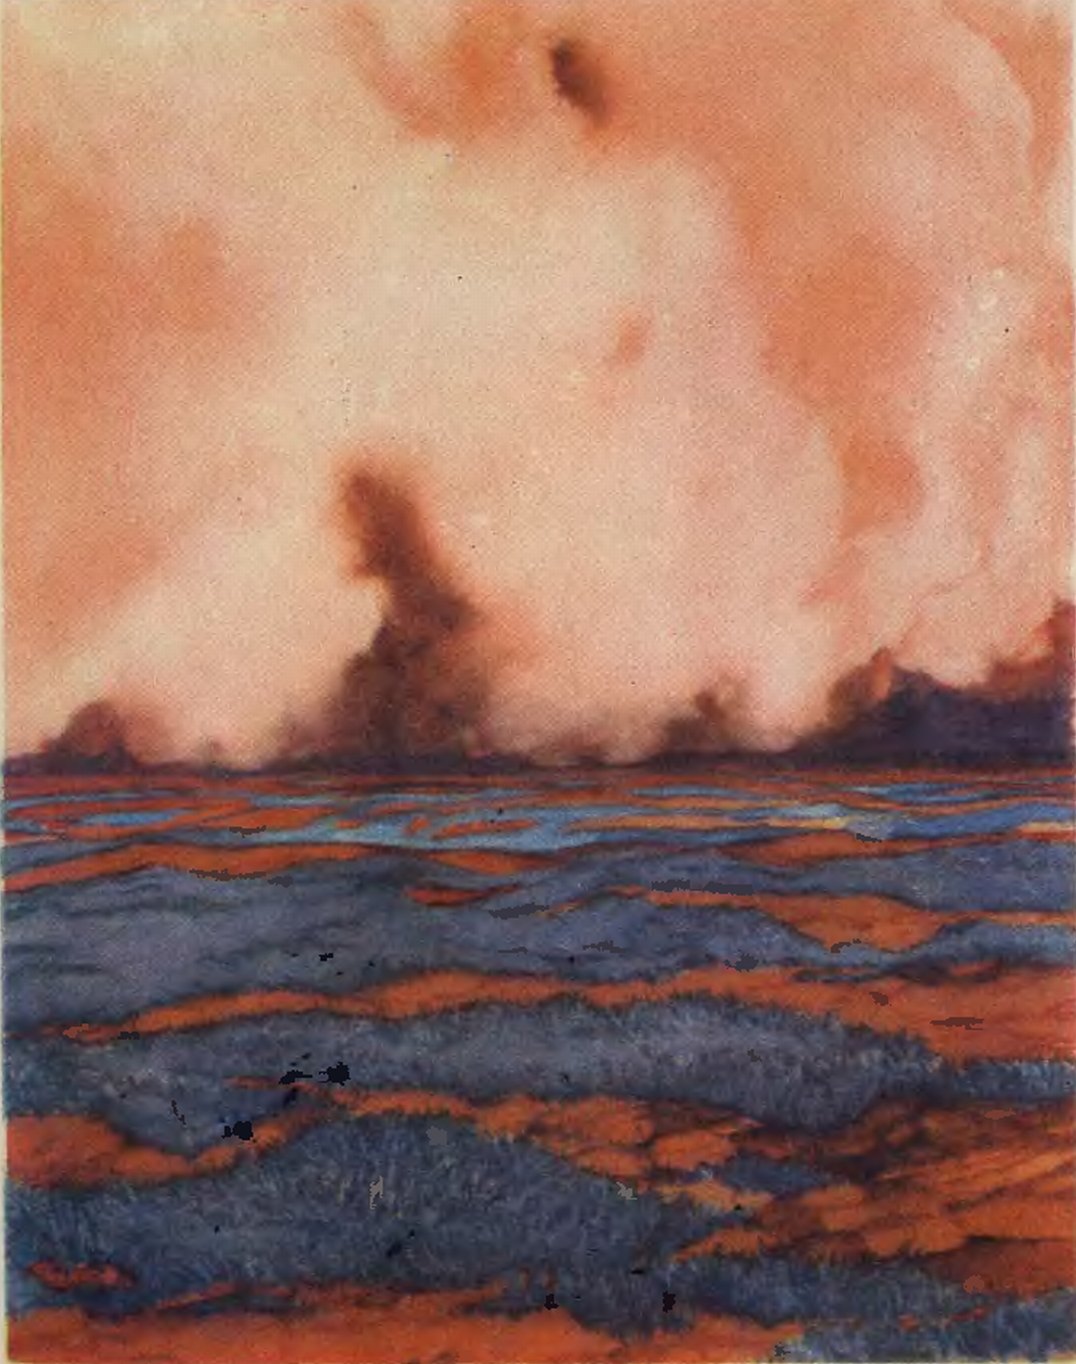 Предполагаемый пейзаж Марса; низкая сине-голубая растительность на красной почве. С горизонта налетает одна из частых на планете песчаных бурь